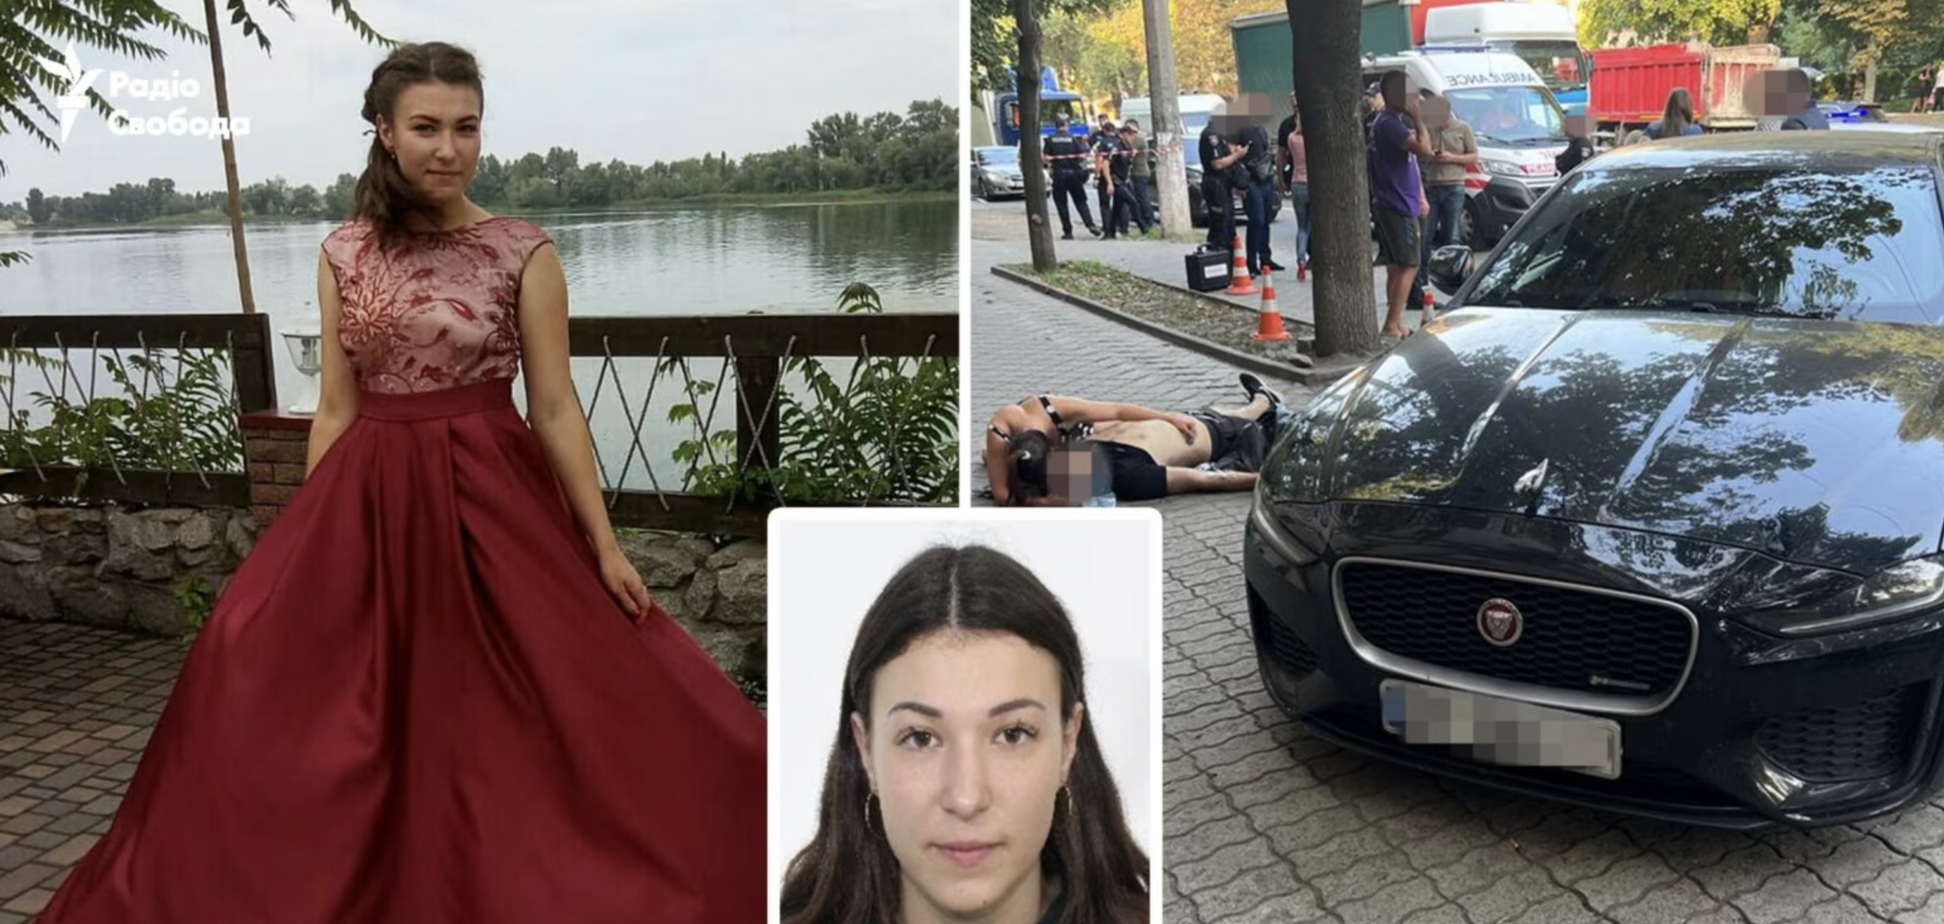 Може отримати від 15 років до довічного: ЗМІ з'ясували особу жінки, яка була в авто у Дніпрі разом із застреленим Сілогавою. Фото